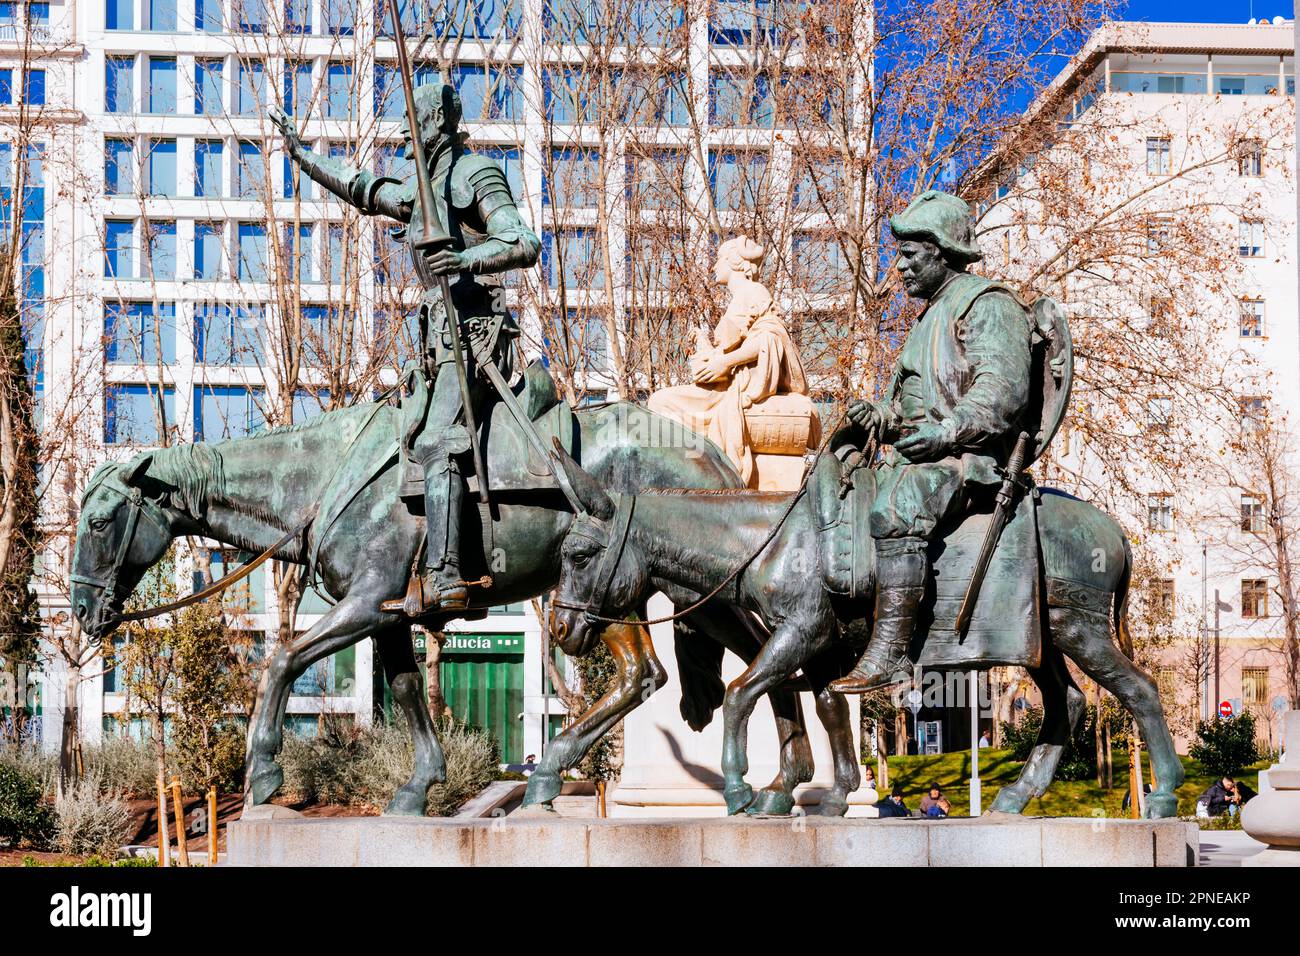 Particolare delle sculture di Don Chisciotte e Sancho Panza. Monumento a Miguel de Cervantes. Plaza de España - Piazza di Spagna. Madrid, Comunidad de Madrid Foto Stock